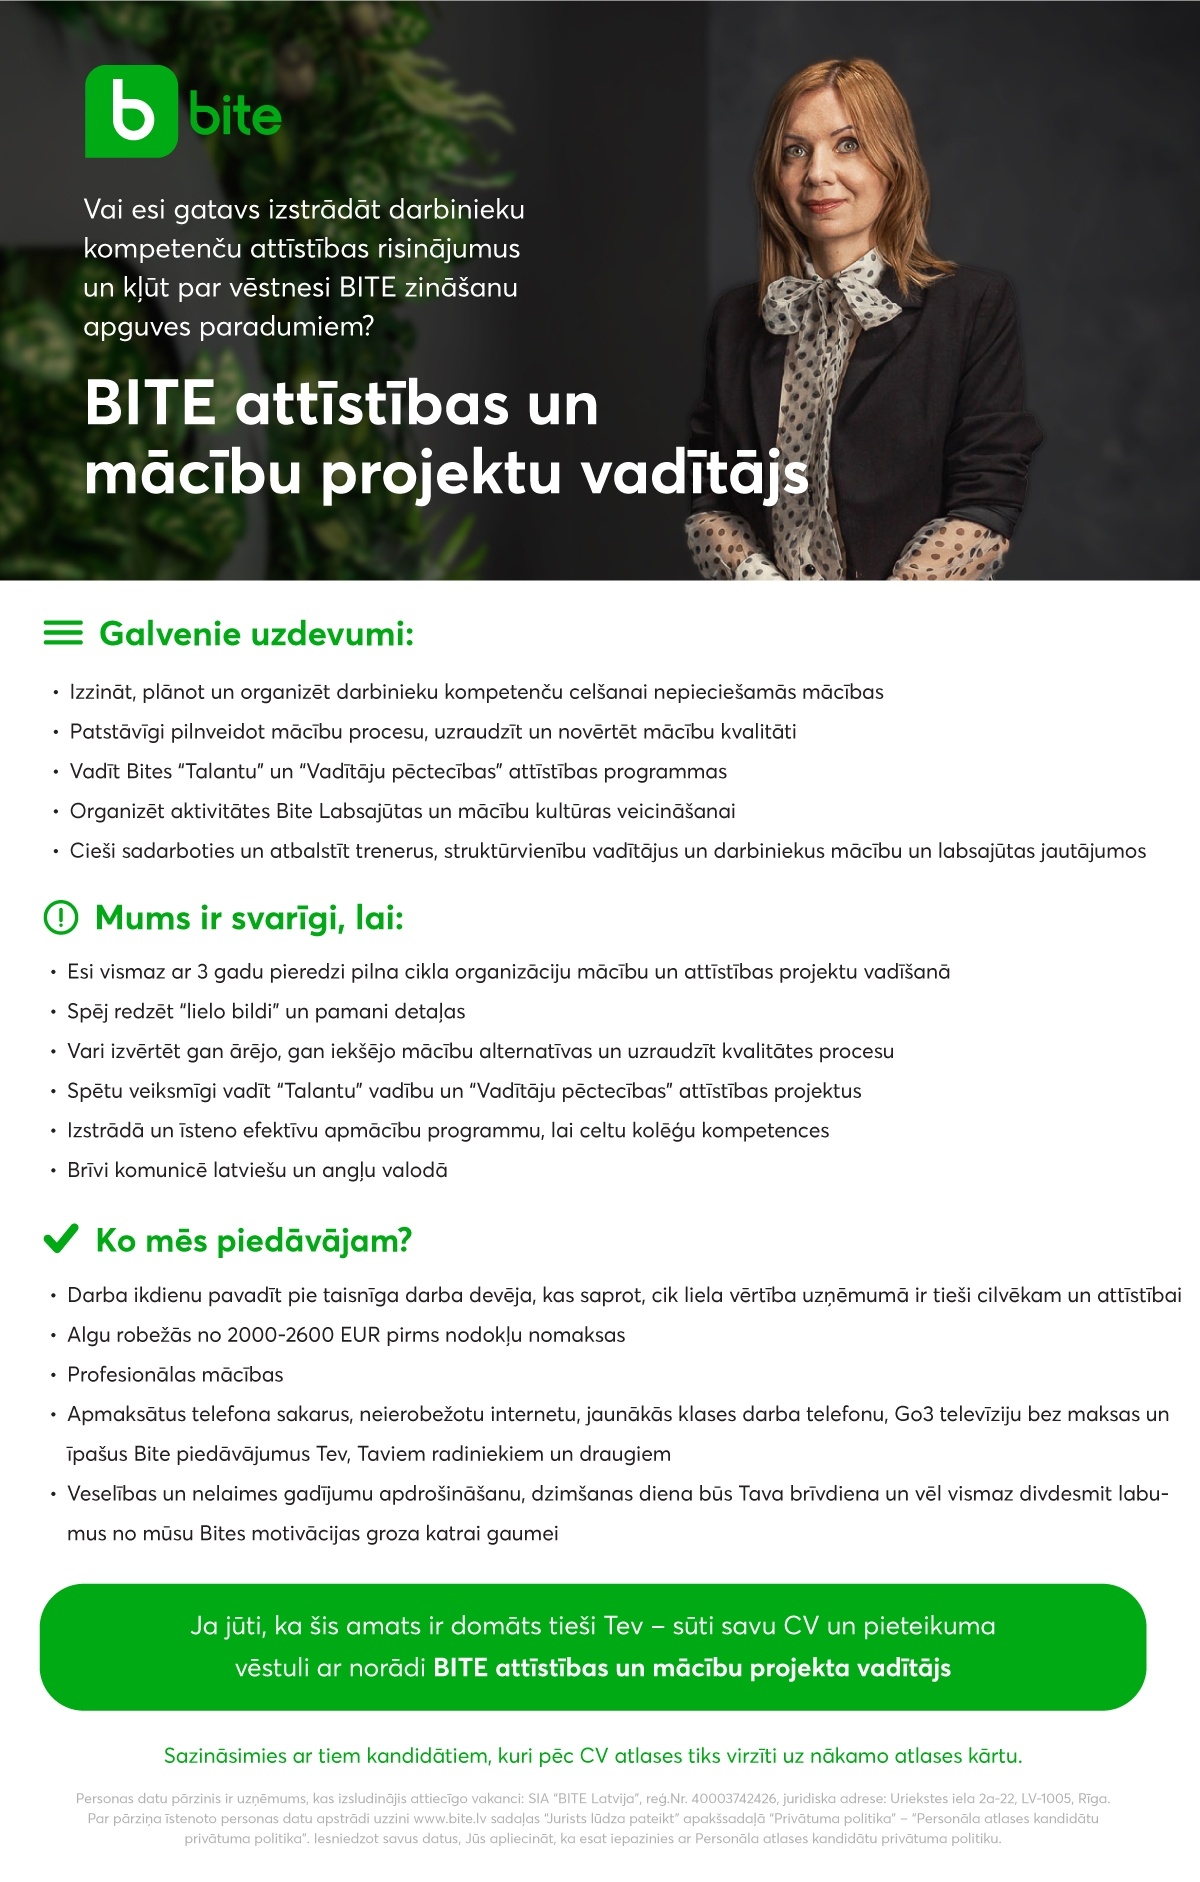 Bite Latvija, SIA "BITE" attīstības un mācību projektu vadītājs/-a